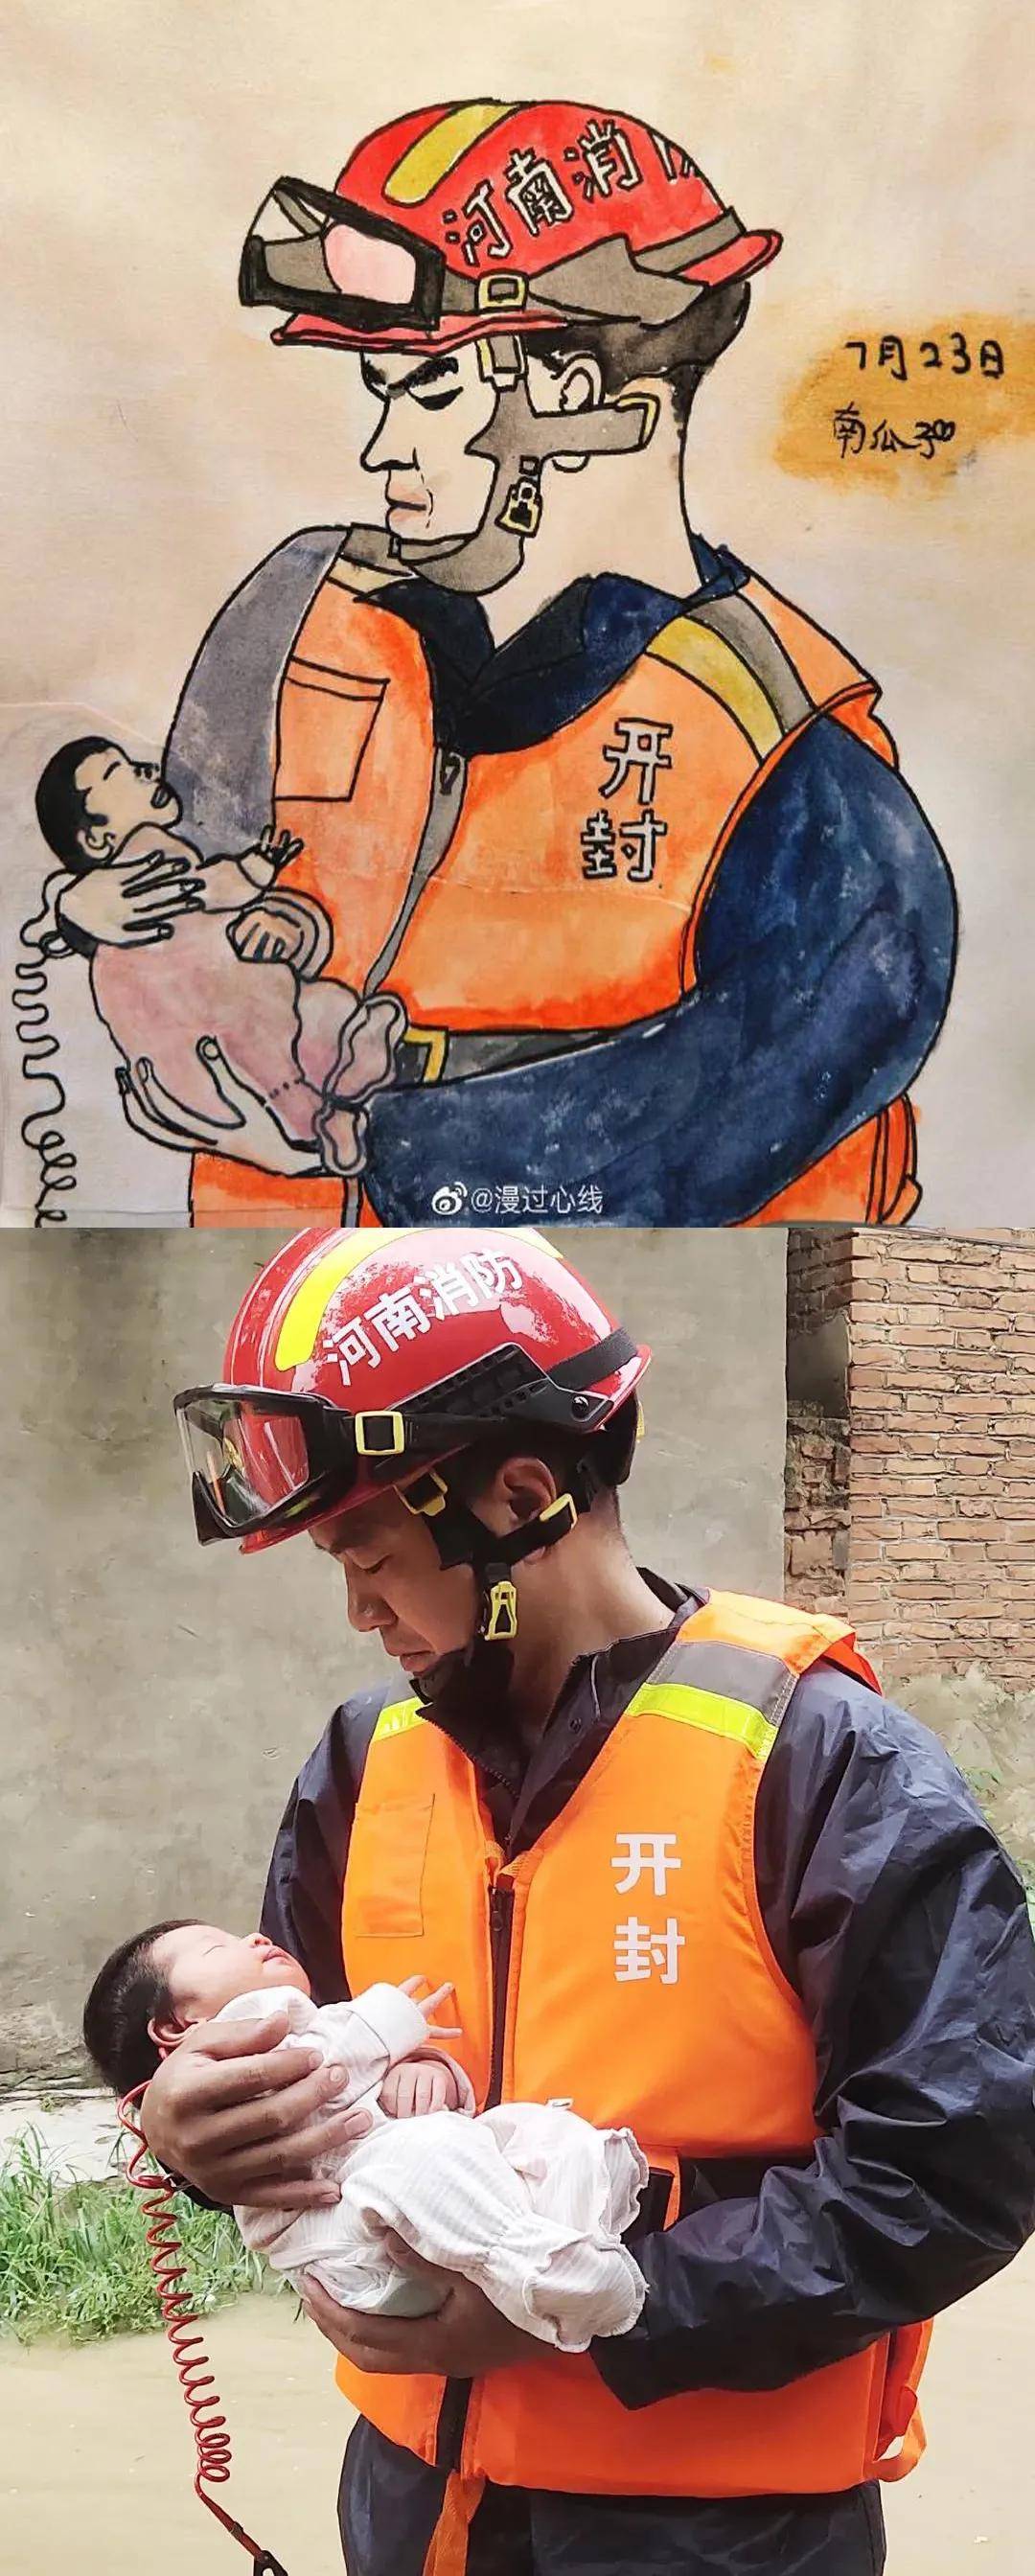 漫画中的人物是李元杰 河南开封消防救援支队一名消防员